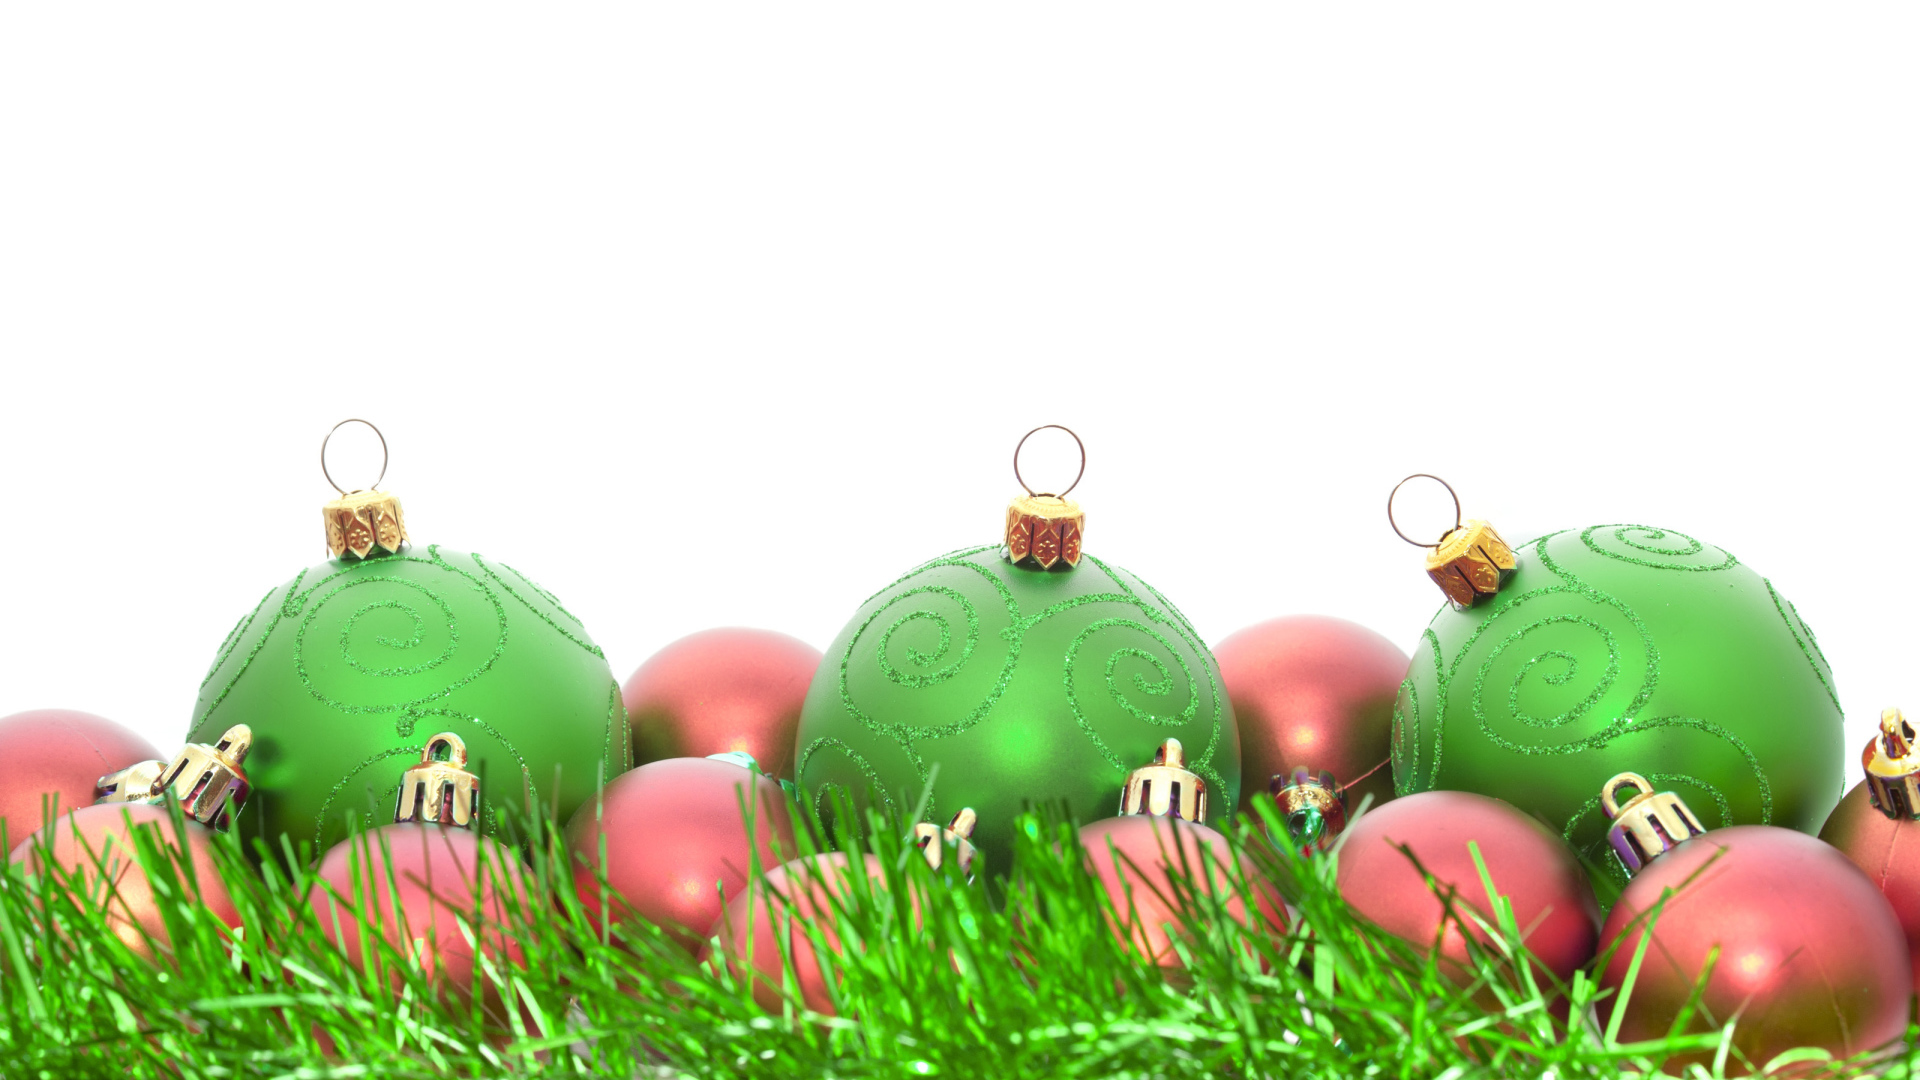 Green and pink Christmas toys on Christmas